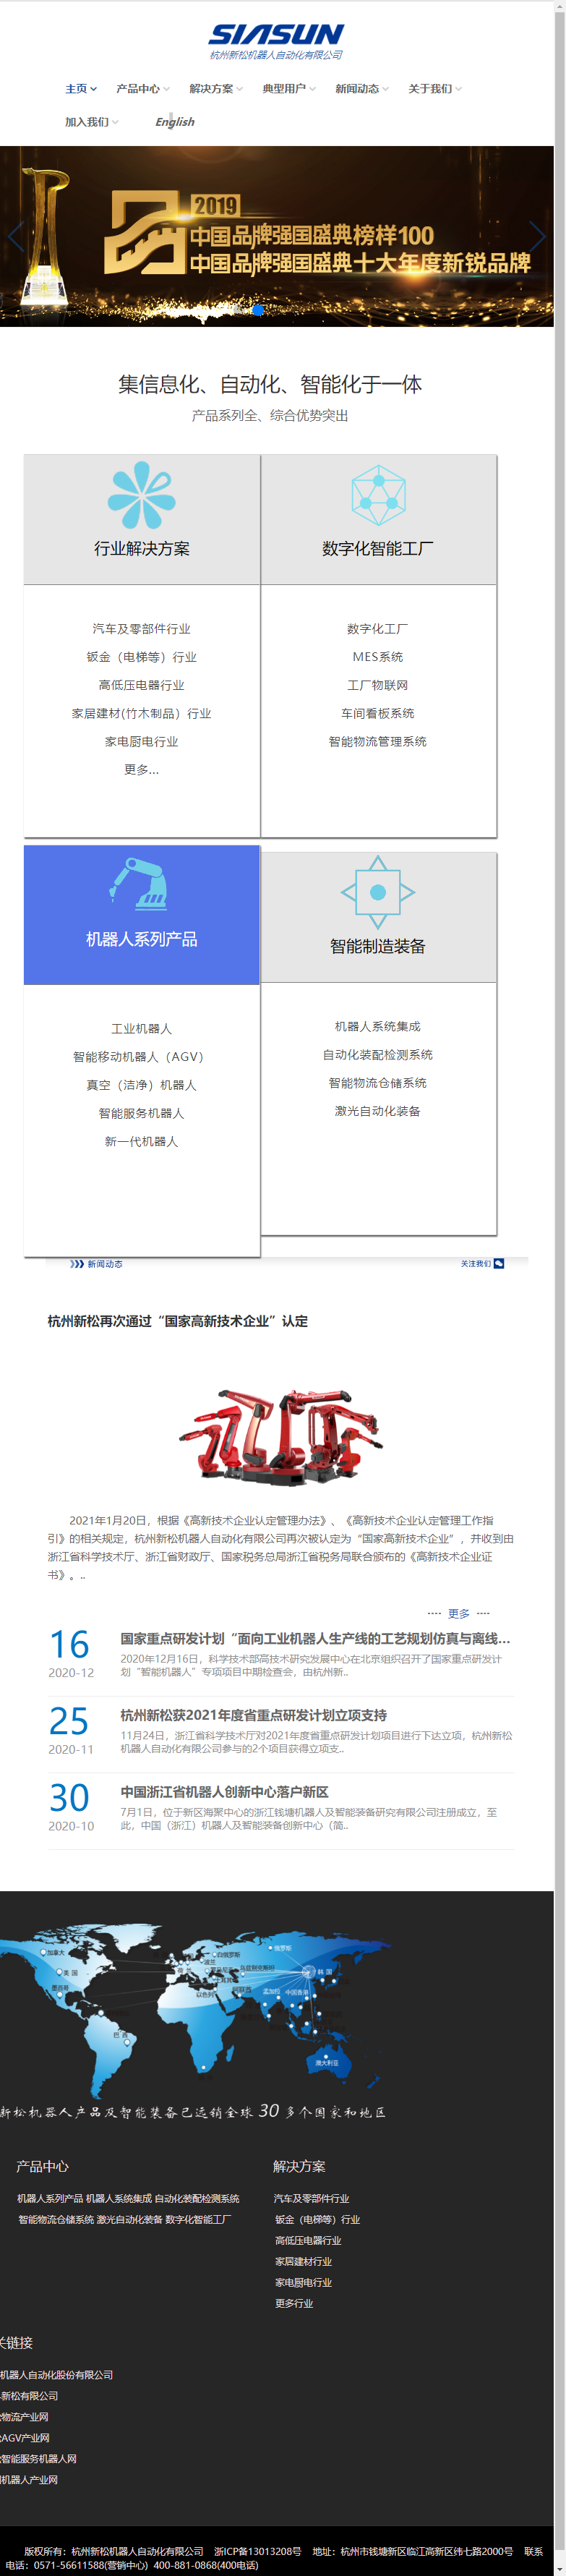 杭州新松机器人自动化有限公司网站案例